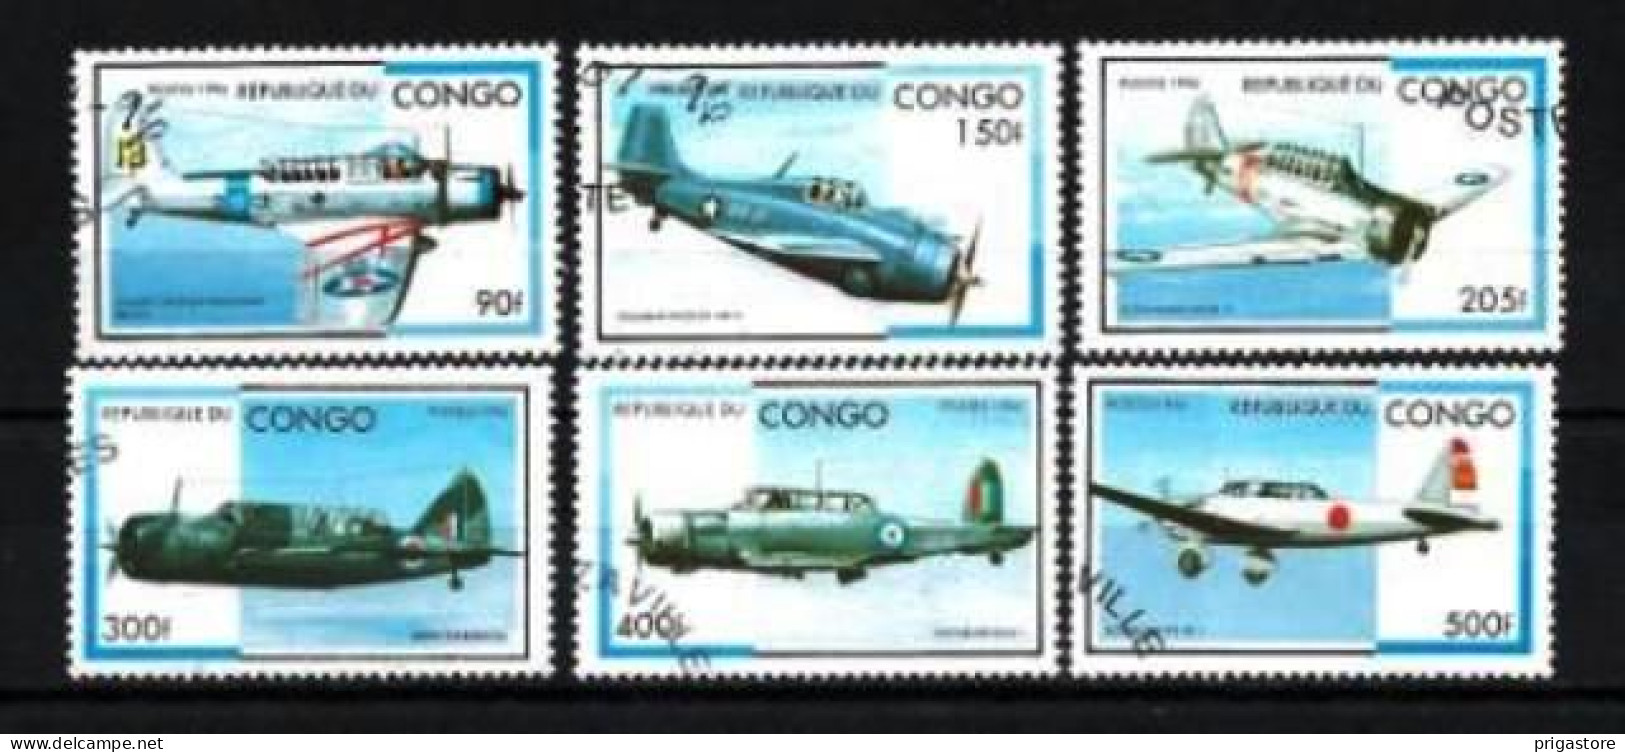 Congo 1996 Avions (39) Yvert N° 1026 N à 1026 T Oblitéré Used - Usati